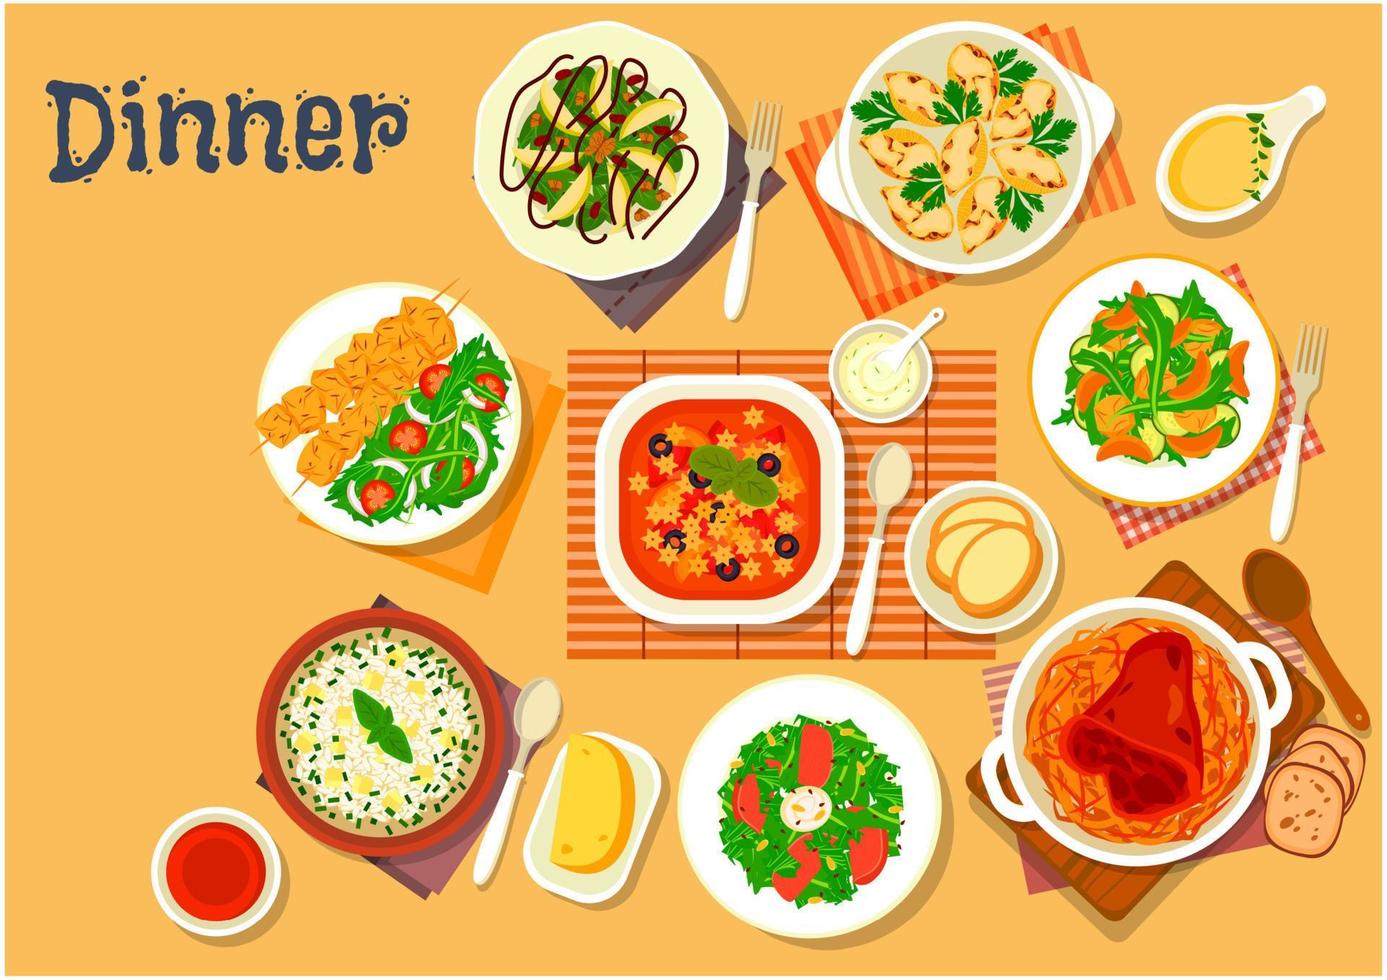 Dinner-Ikone mit Gerichten der italienischen, deutschen Küche vektor